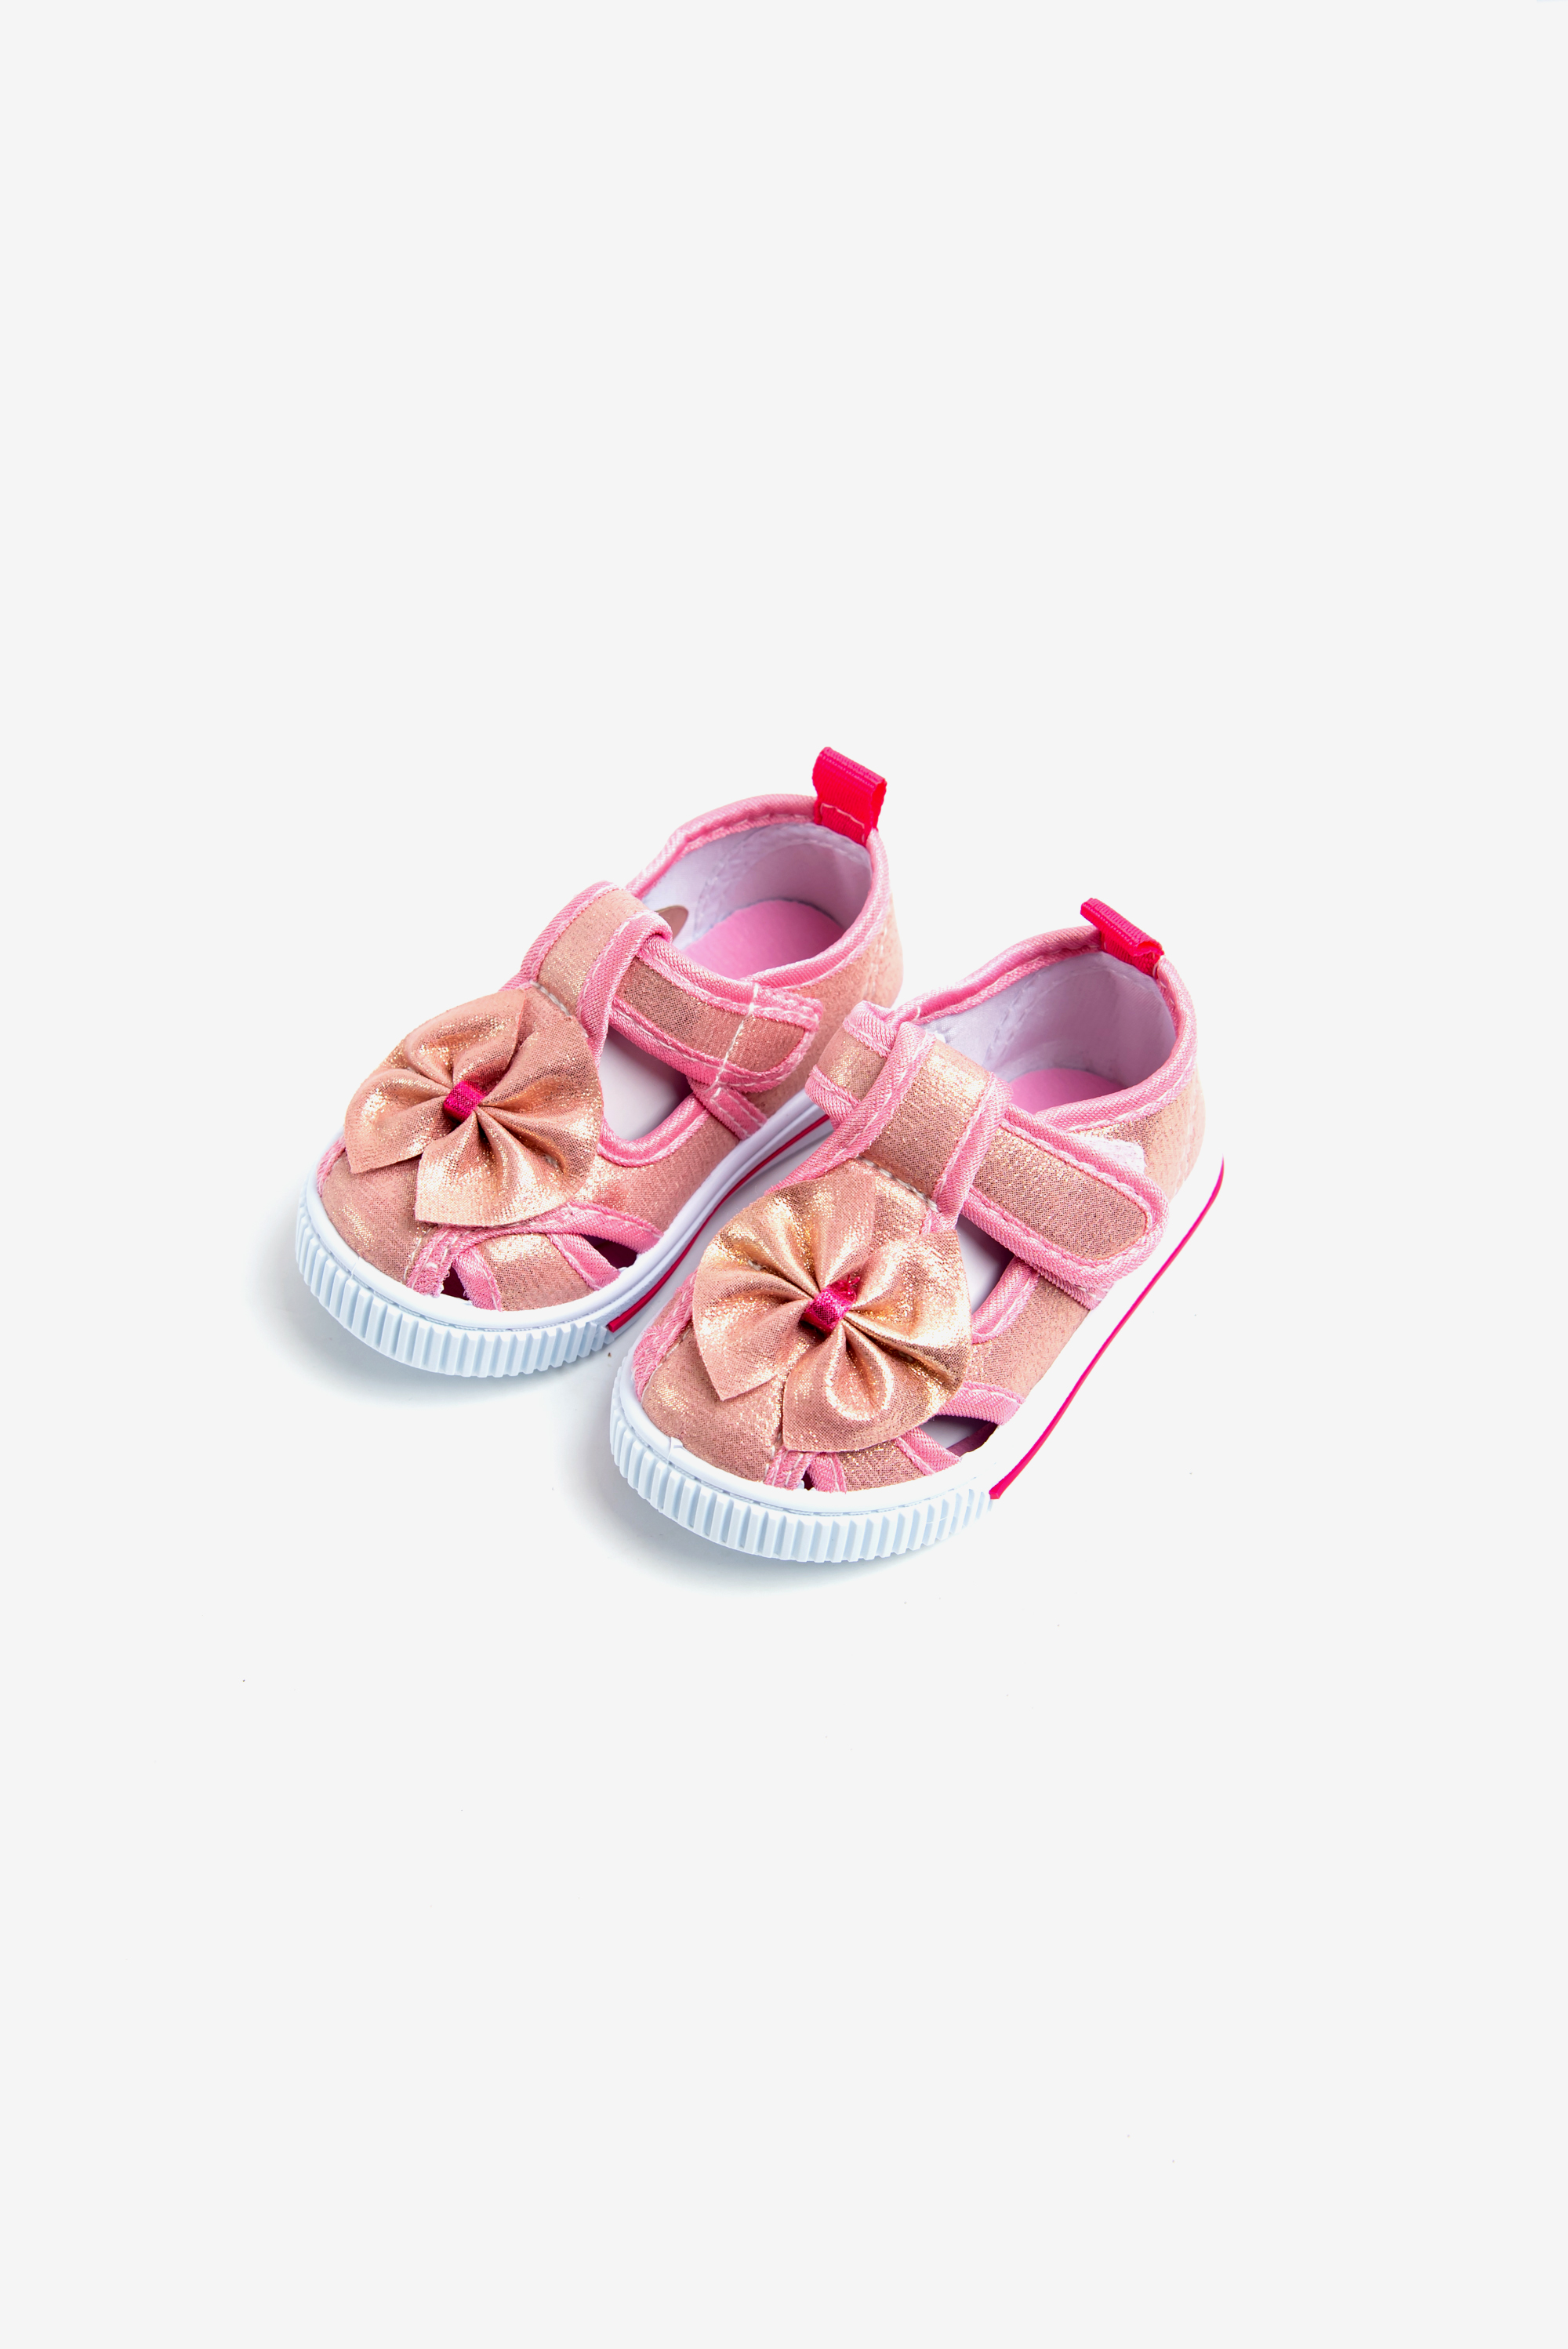 Giày tập đi bé gái giày chống trượt giày bít mũi cho trẻ em dép quai hậu Rabity 20001